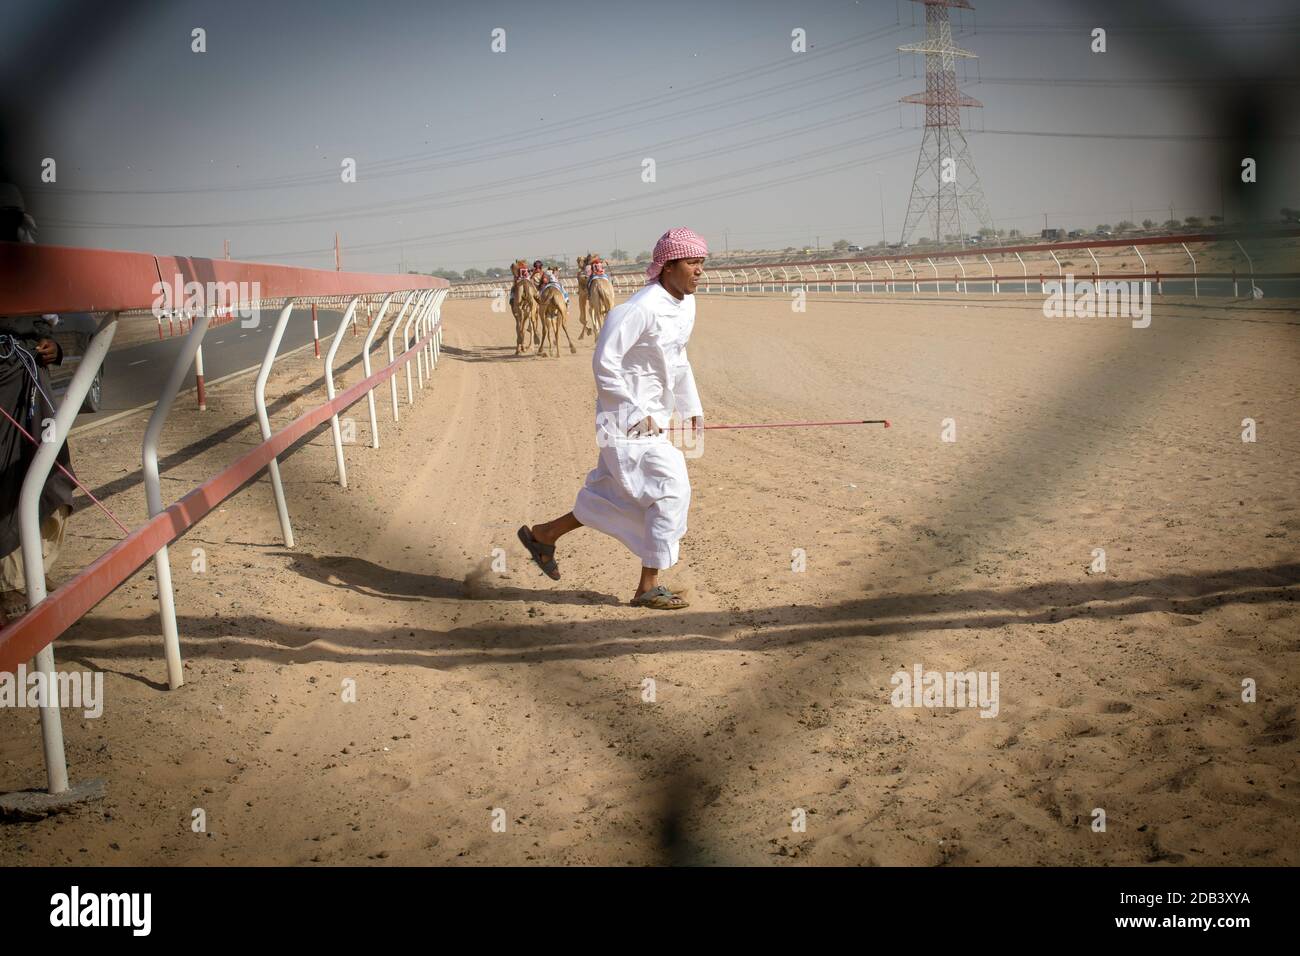 Emirats Arabes Unis / Al Dhaid / Camel Race Track dans la région centrale de l'émirat de Sharjah aux Emirats Arabes Unis lorsque les courses se déroulent, Banque D'Images